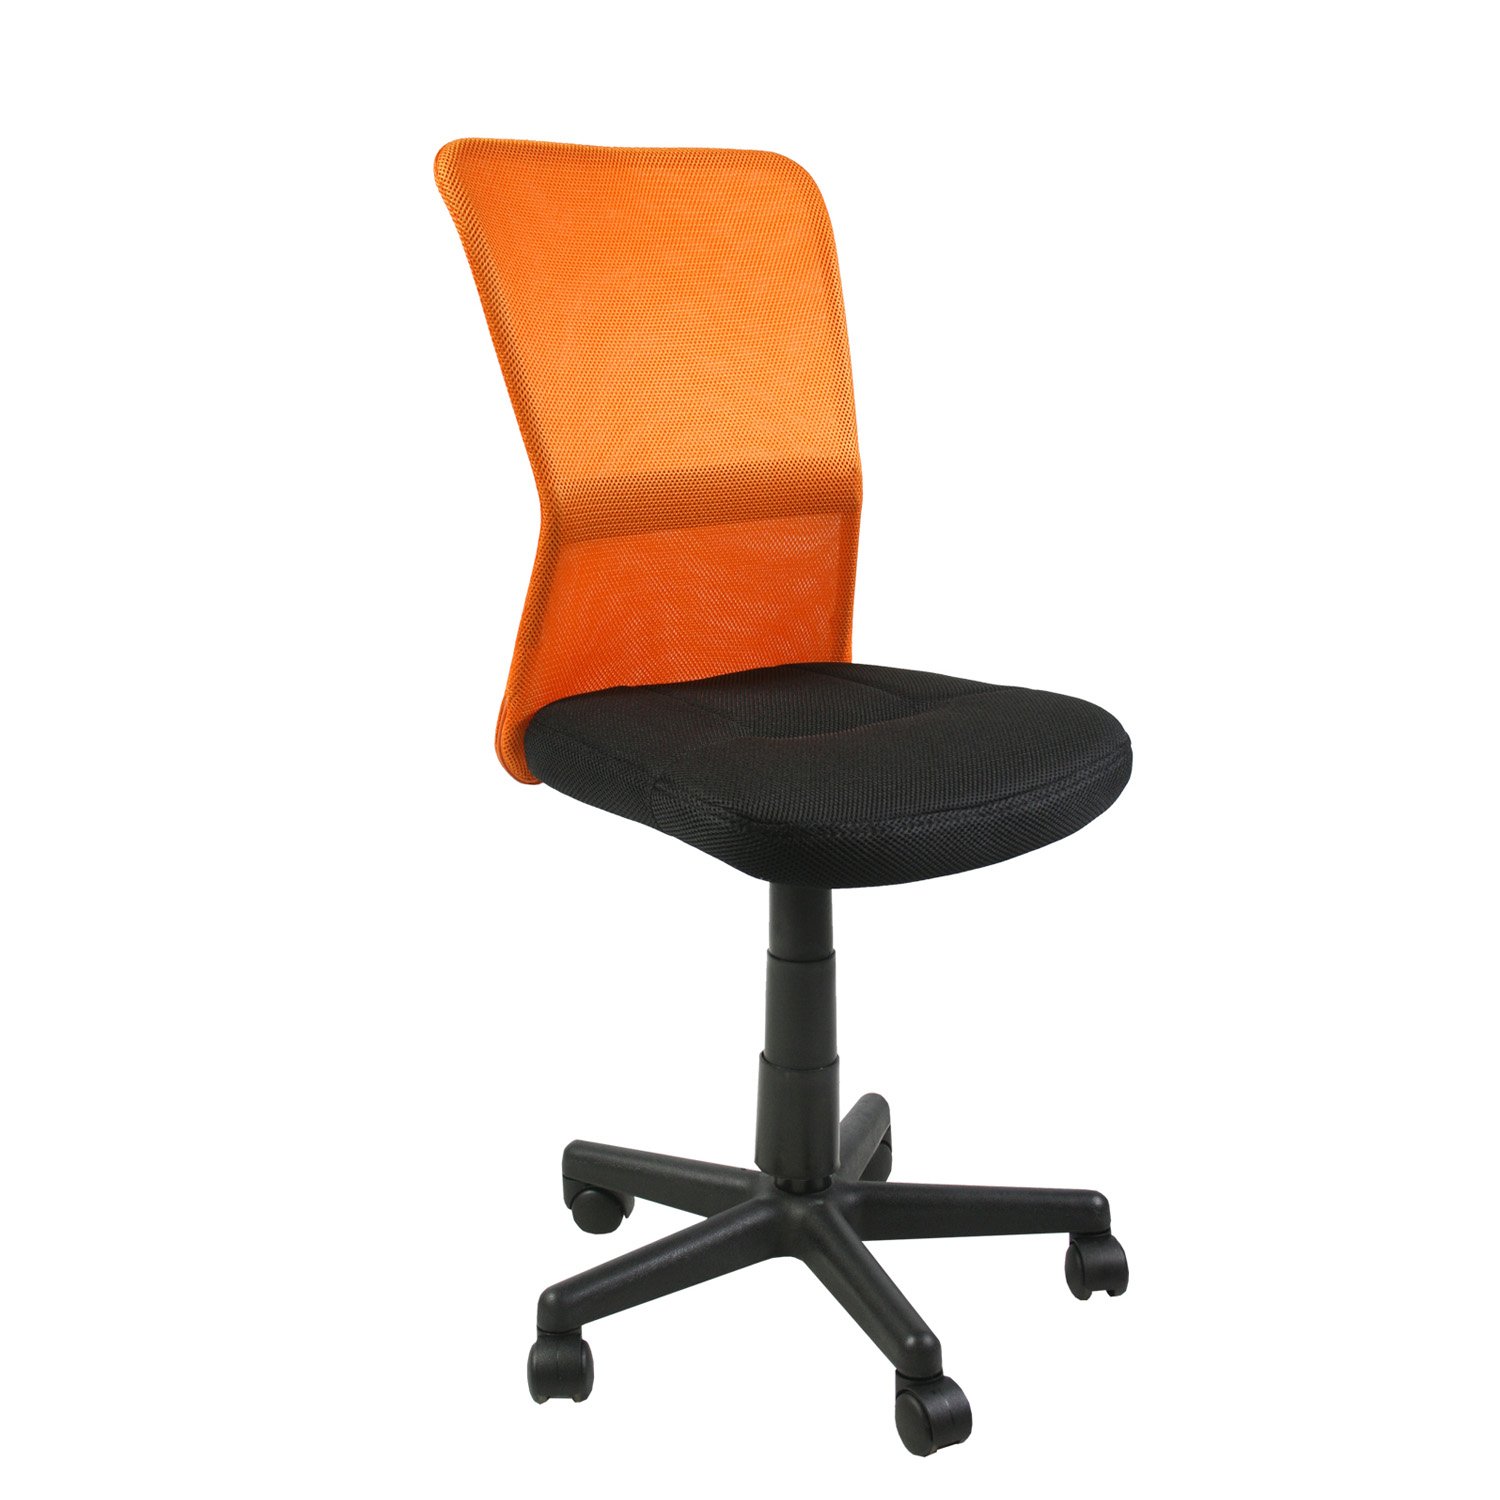 Biuro kėdė BELICE, 41x42x83-93 cm, oranžinė